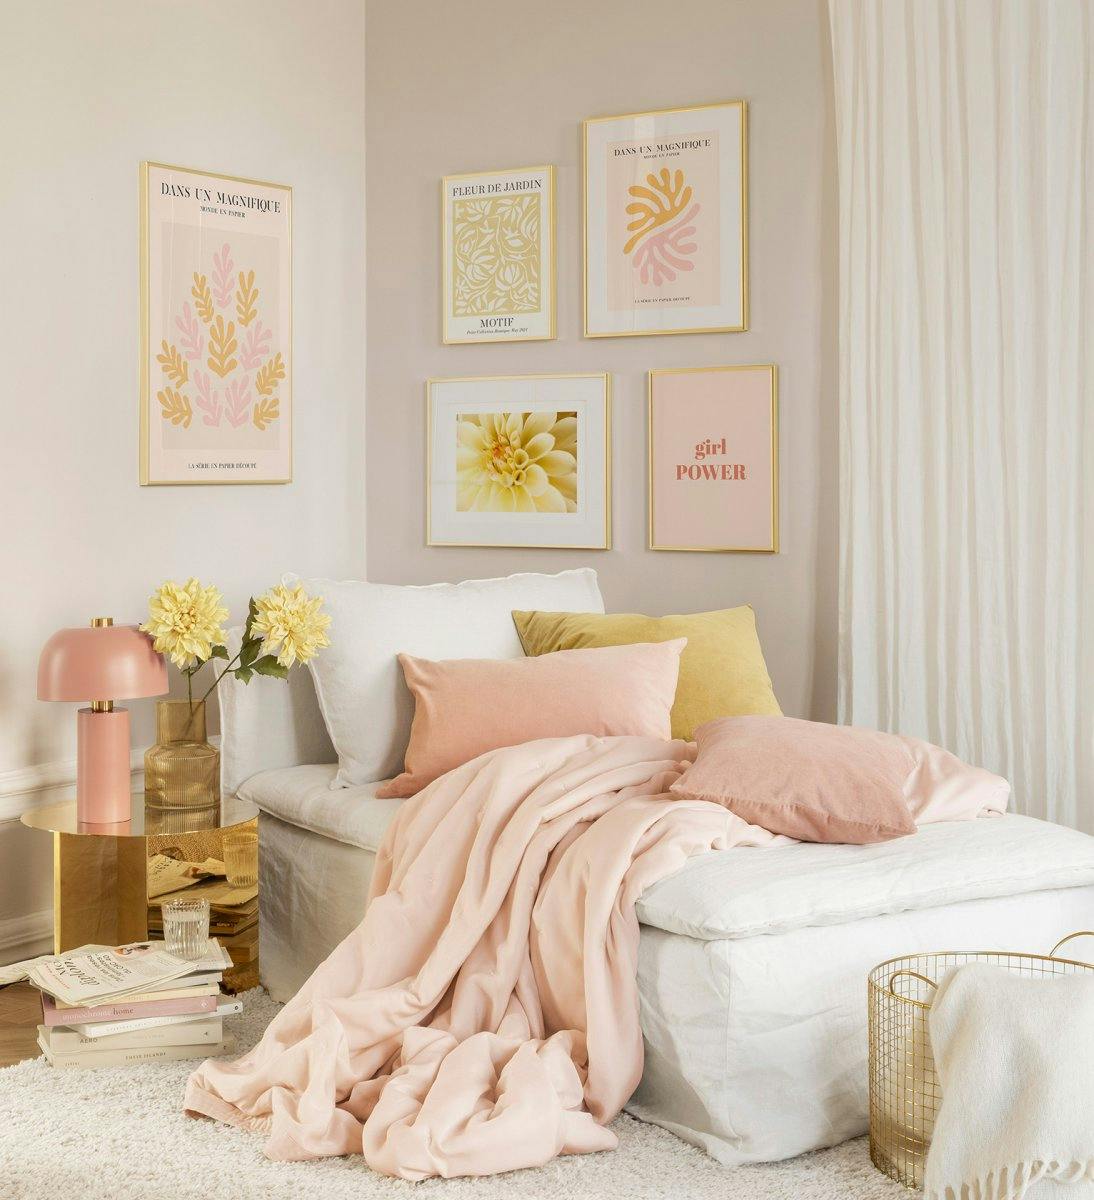 Galerie de perete cochetă pentru dormitor, cu postere artistice în roz și portocaliu cu rame aurii